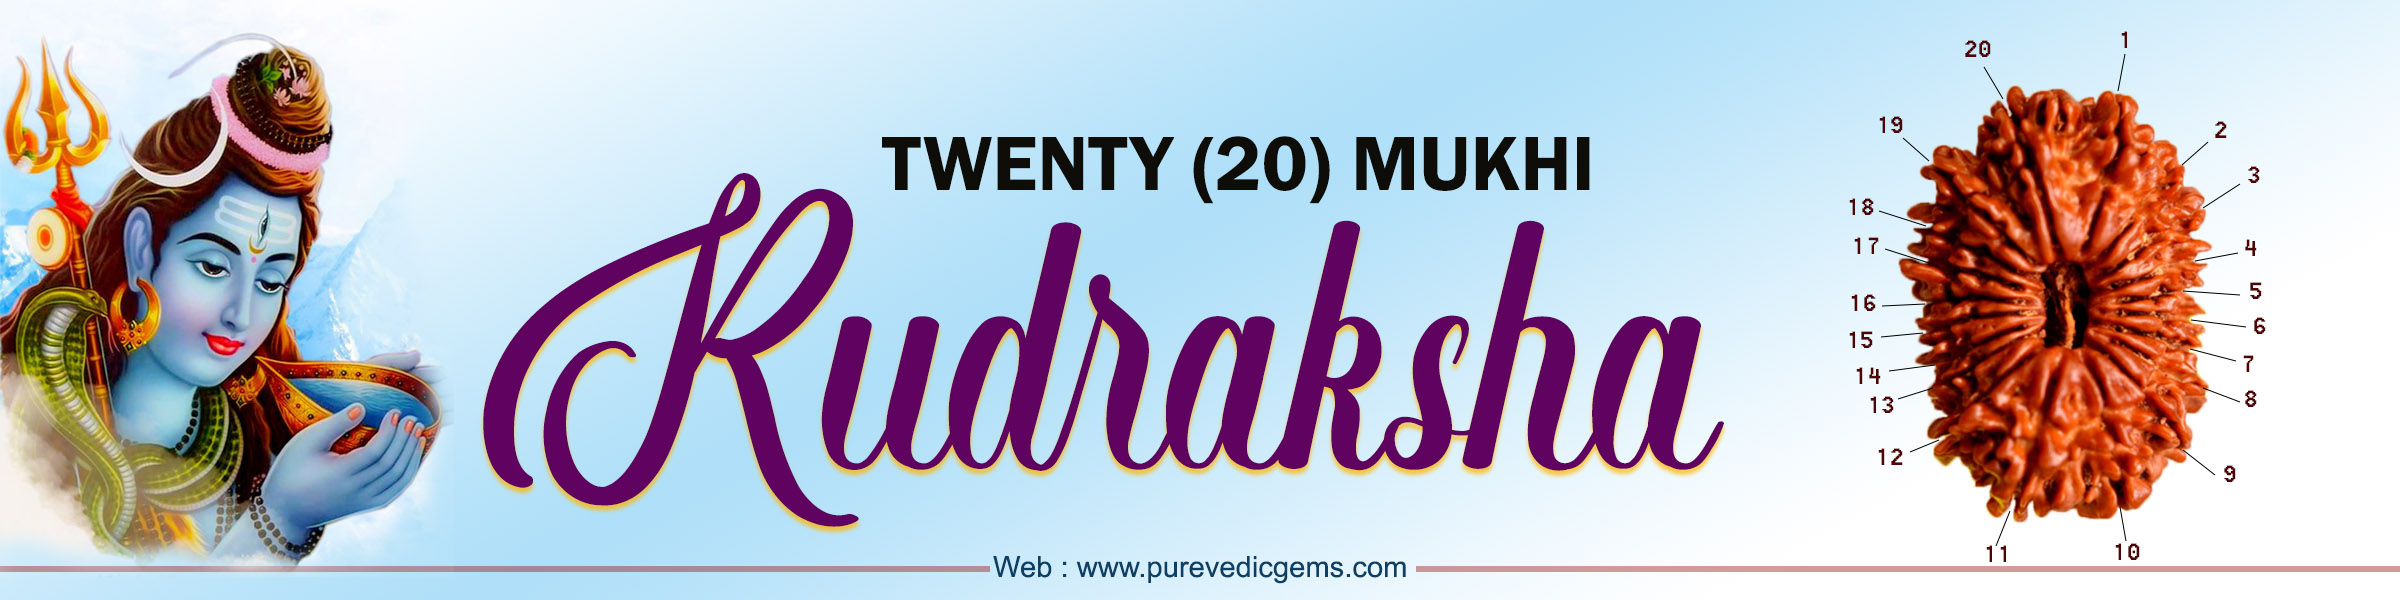 TWENTY (20) MUKHI RUDRAKSHA